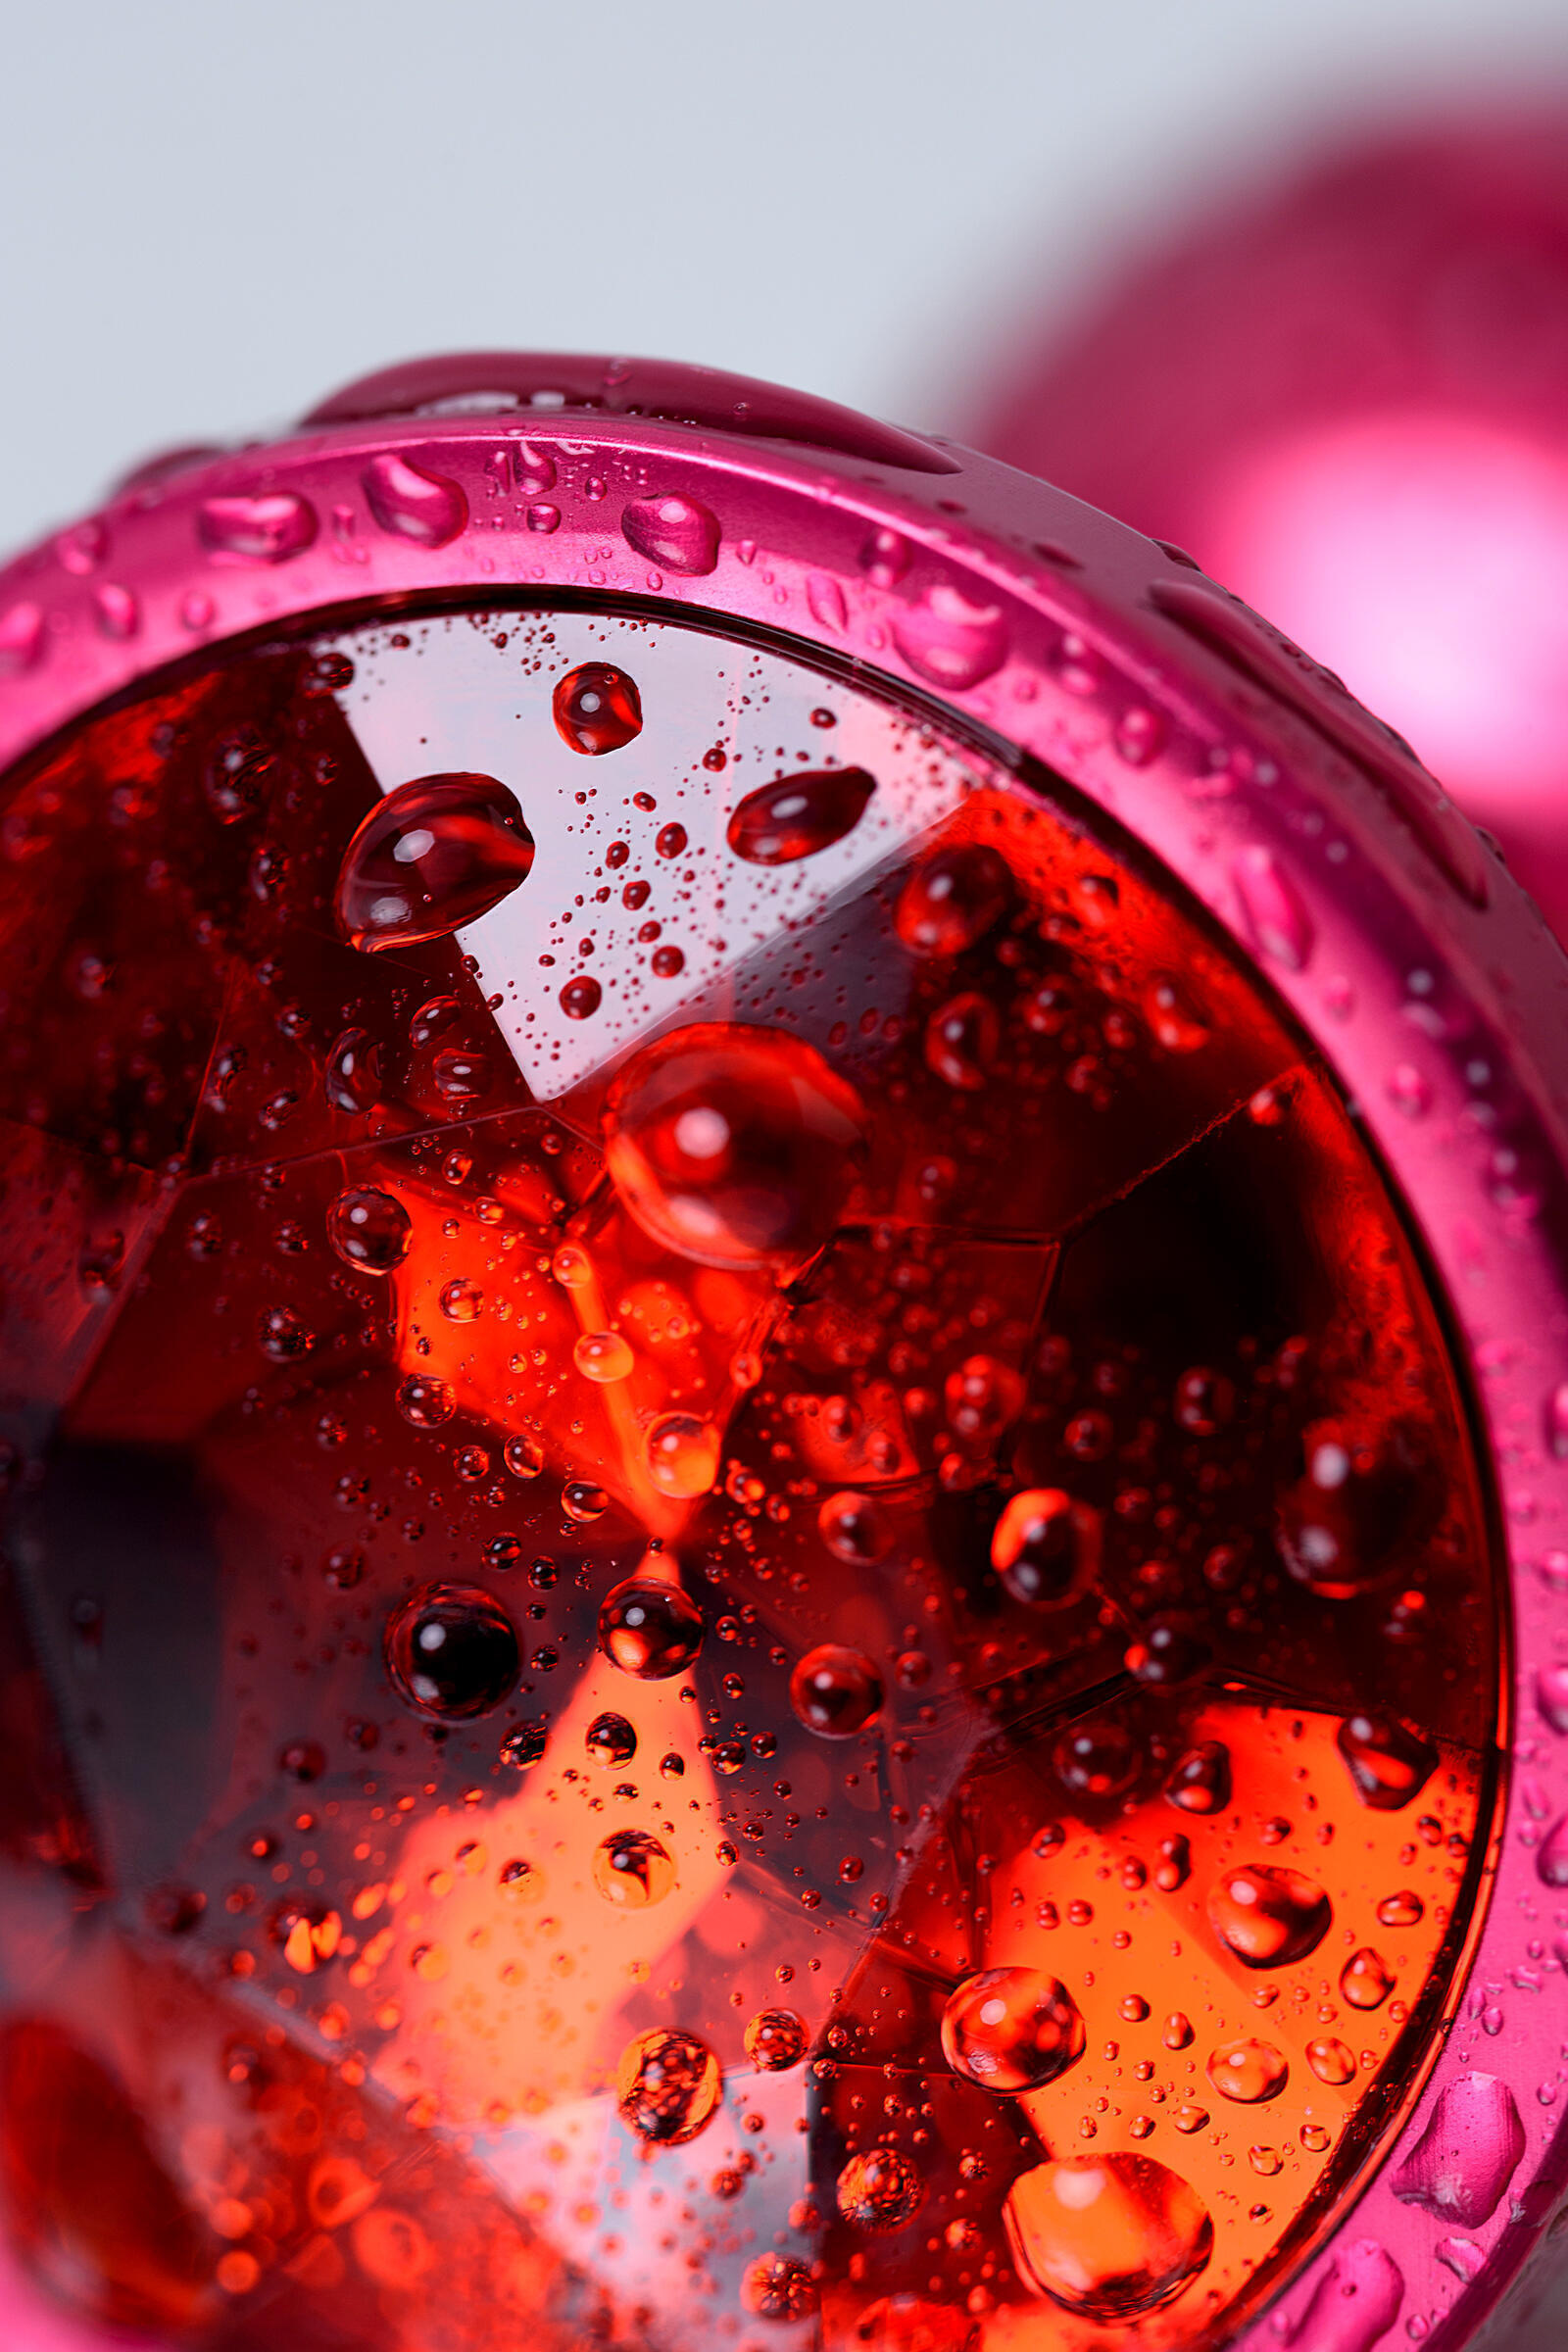 Анальная пробка Toyfa Metal с кристалом цвета рубин, 7,2 см, красный